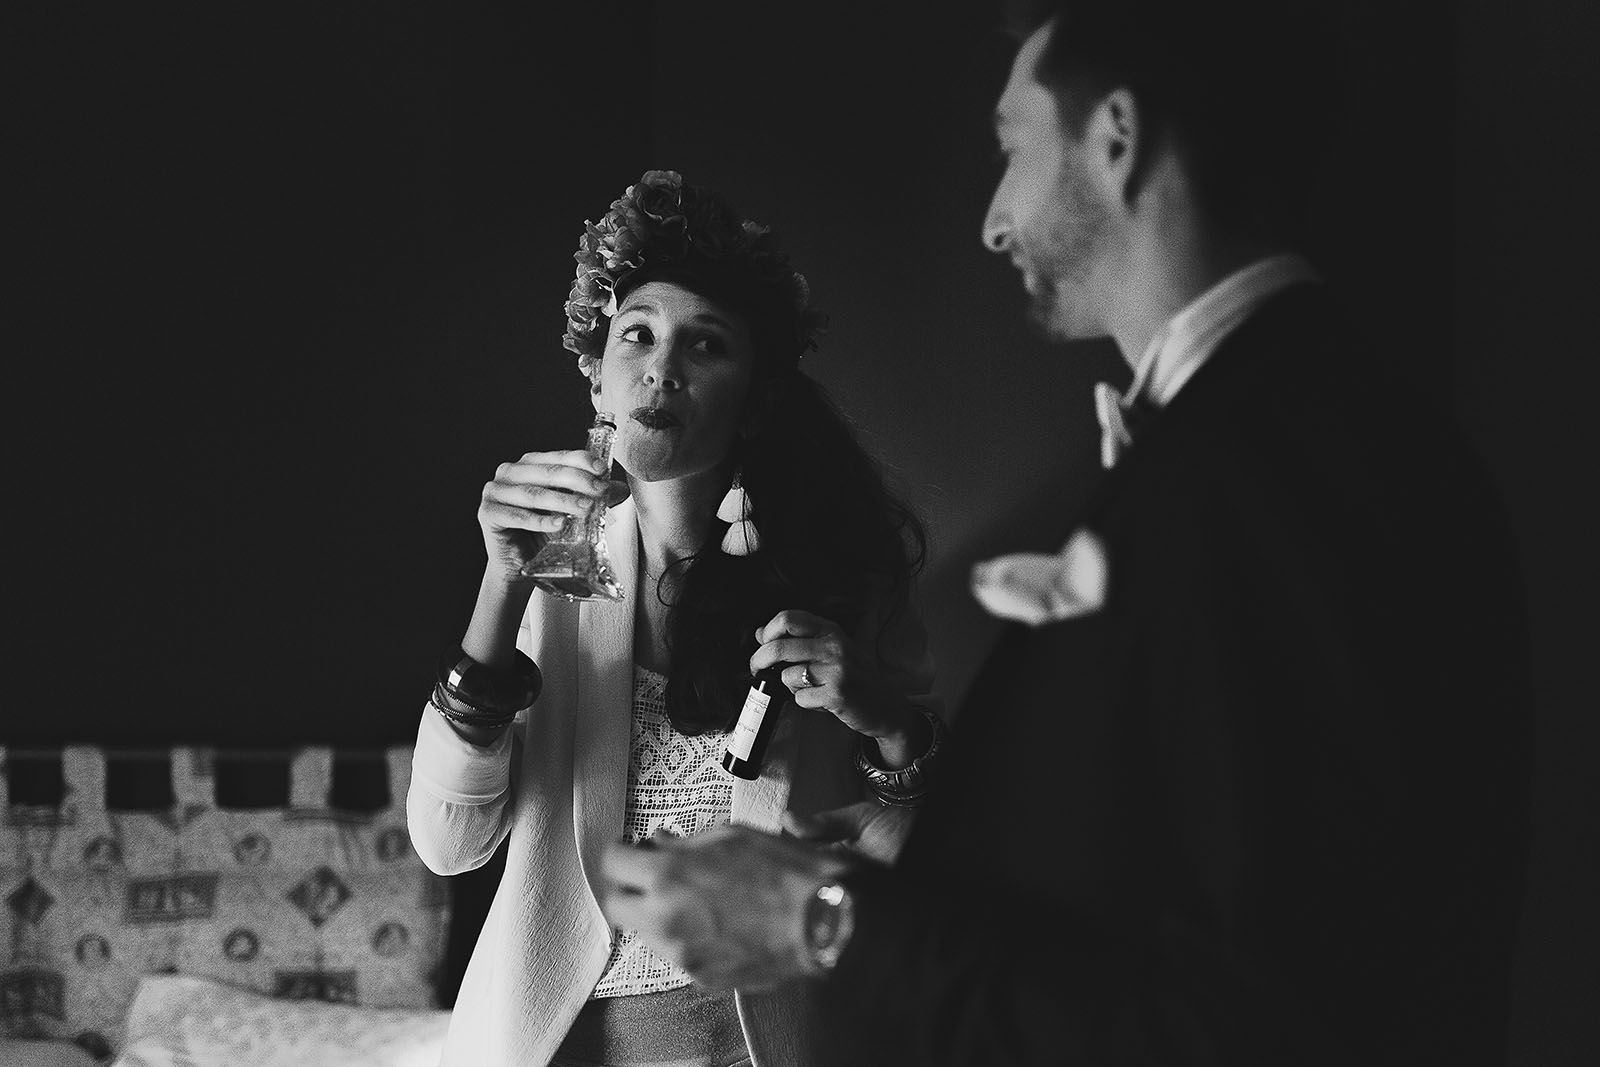 Photographe de mariage à Clermont Ferrand La mariée boit de l'alcool avant la cérémonie